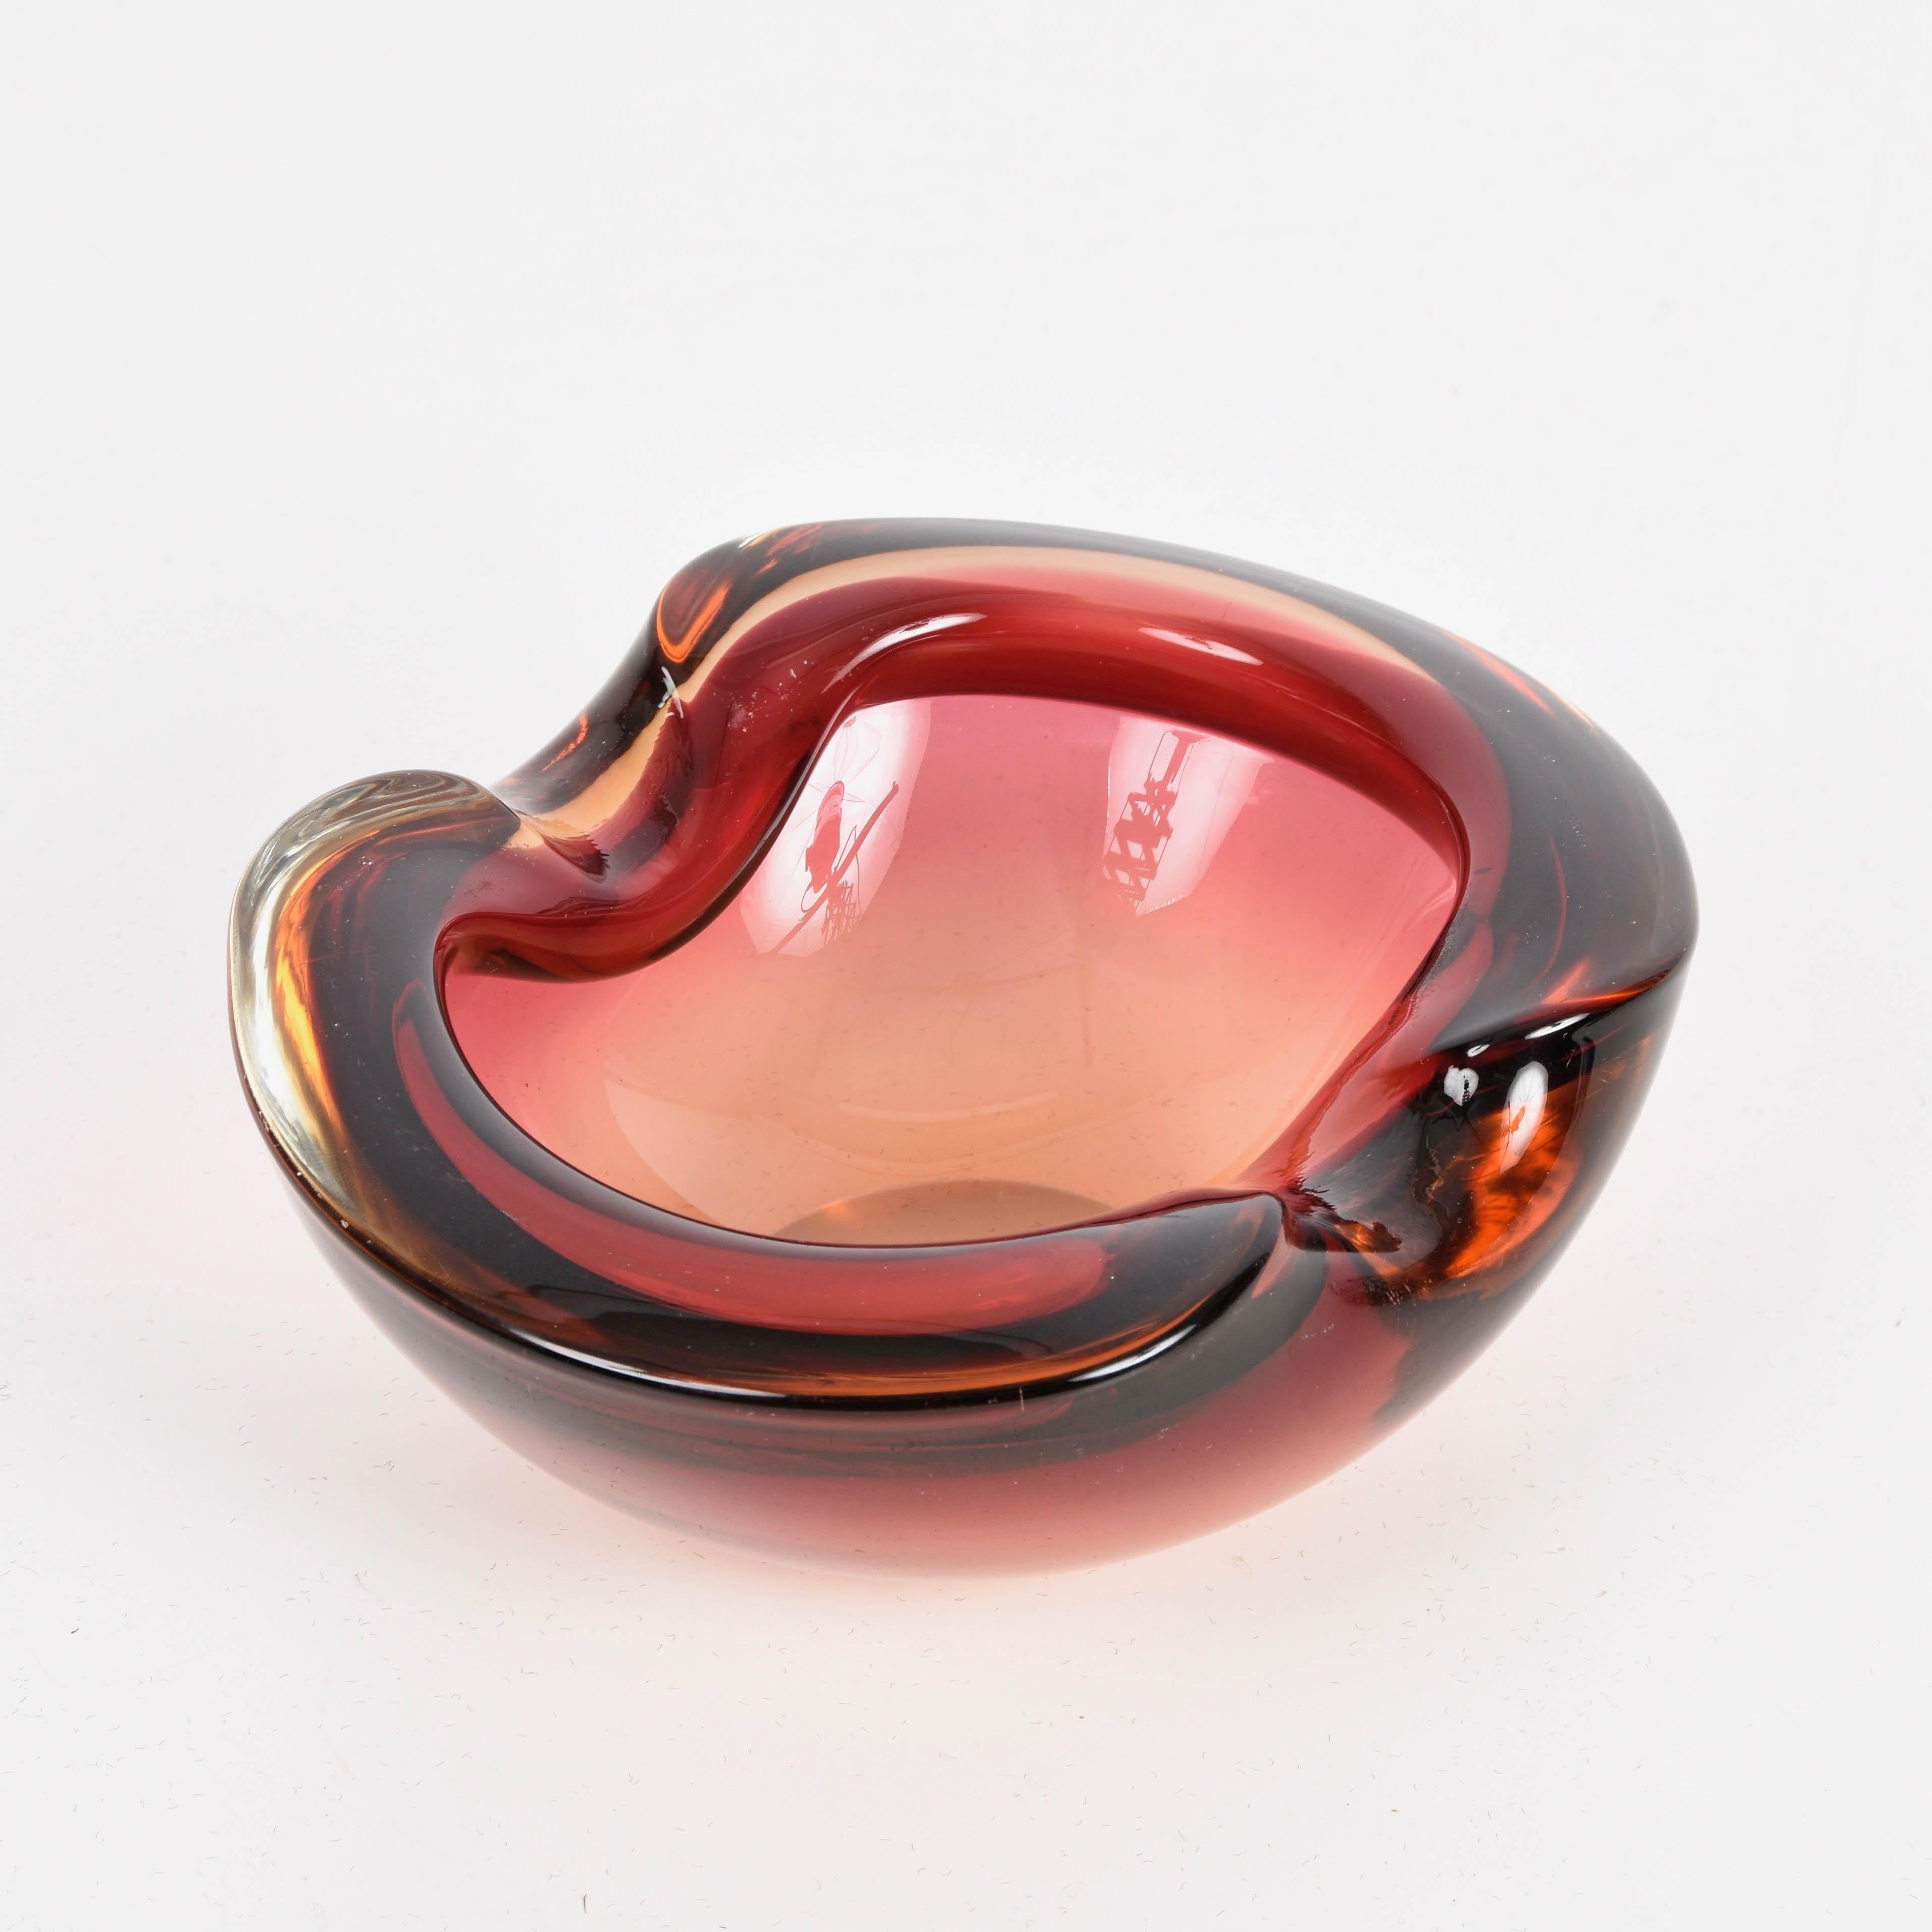 Magnifique bol ou cendrier en verre de Murano en forme de cœur, rouge rubis et cristal. Cette pièce étonnante a été produite en Italie dans les années 1960.

Cette magnifique pièce est un parfait mélange des lignes sinueuses et des couleurs du